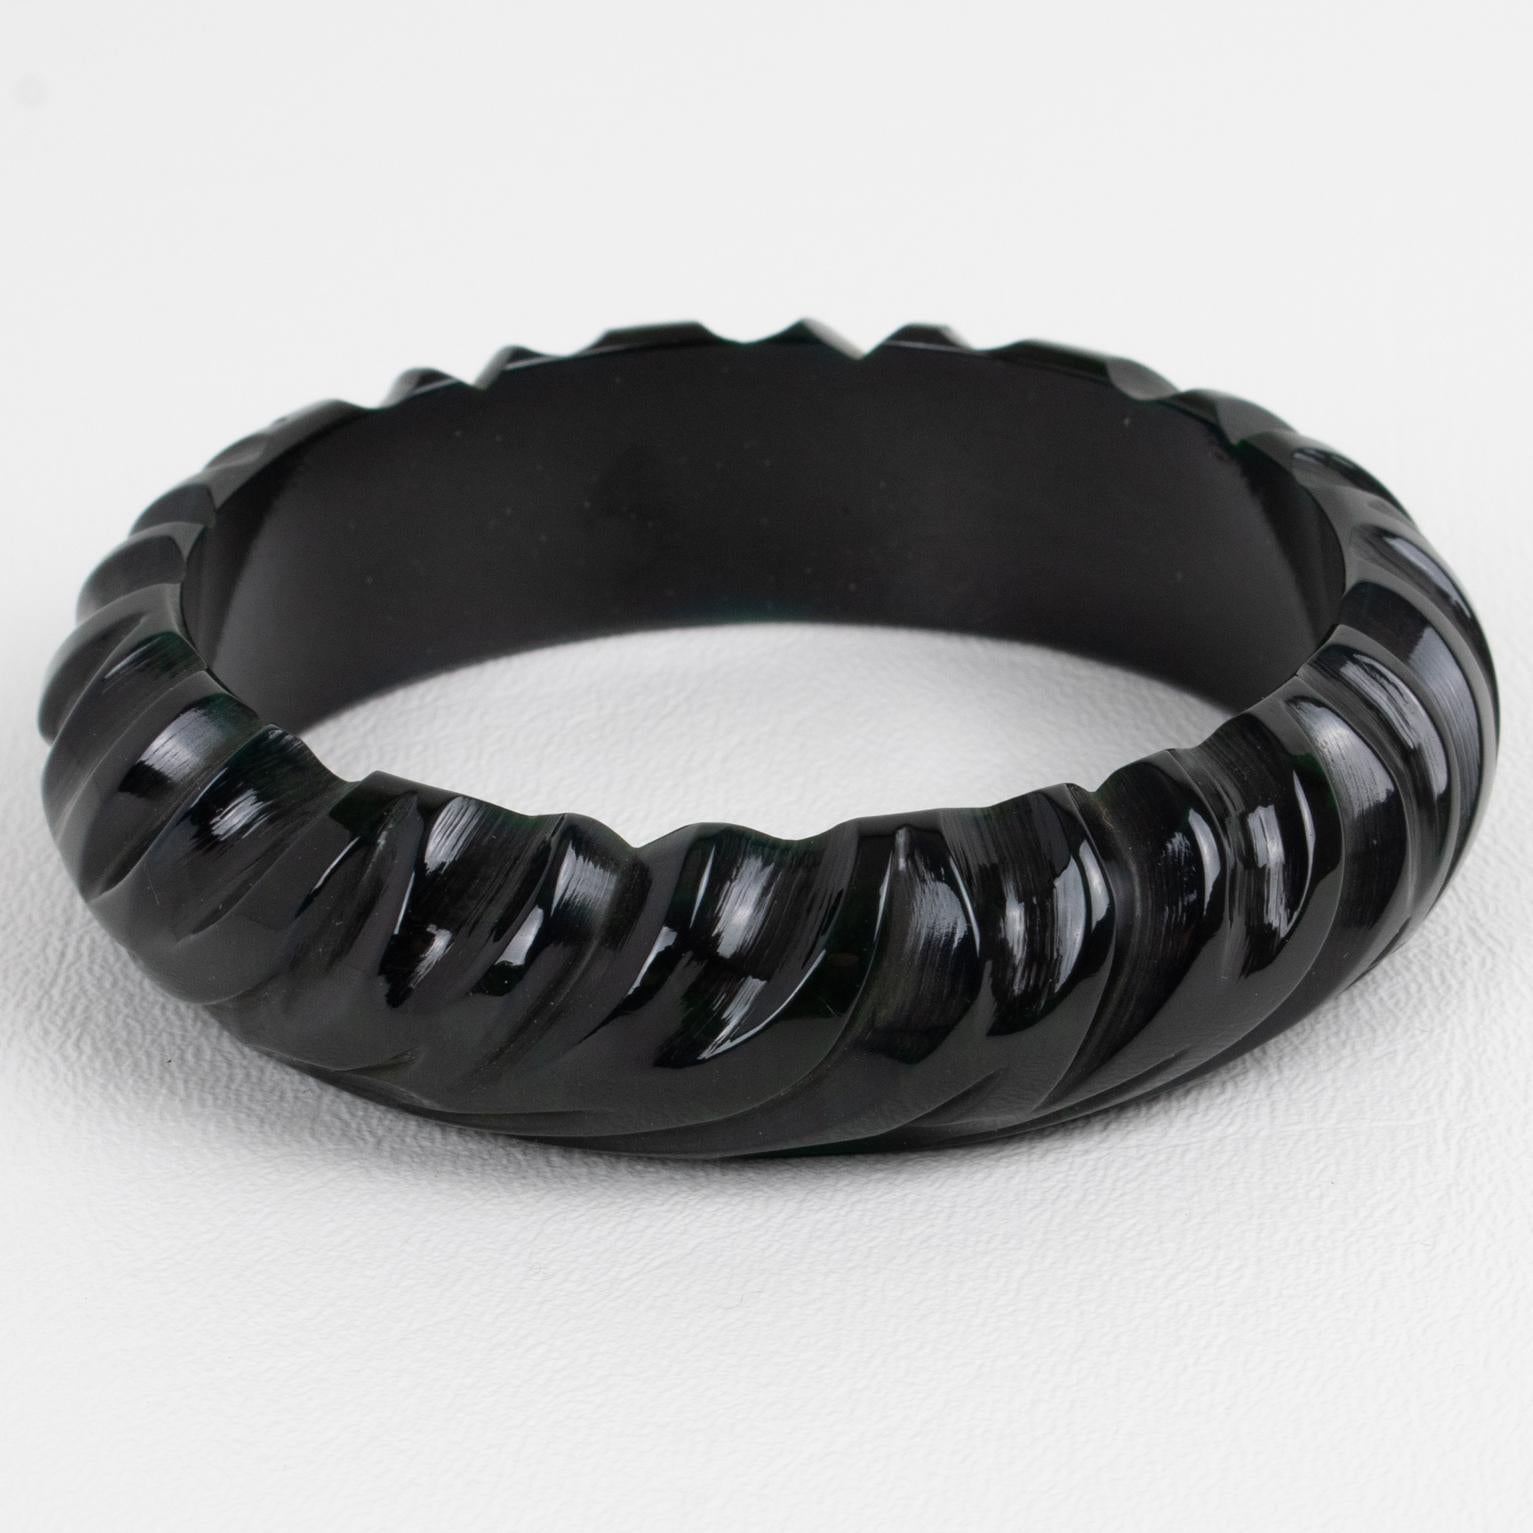 Dies ist eine schöne schwarze Bakelit geschnitzt Armband Armreif. Er hat eine klobige, gewölbte Form mit tiefen geometrischen Schnitzereien rundherum. Die Farbe ist ein intensiver, echter Lakritzschwarzton.
Abmessungen: Innendurchmesser 2,57 cm (6,5